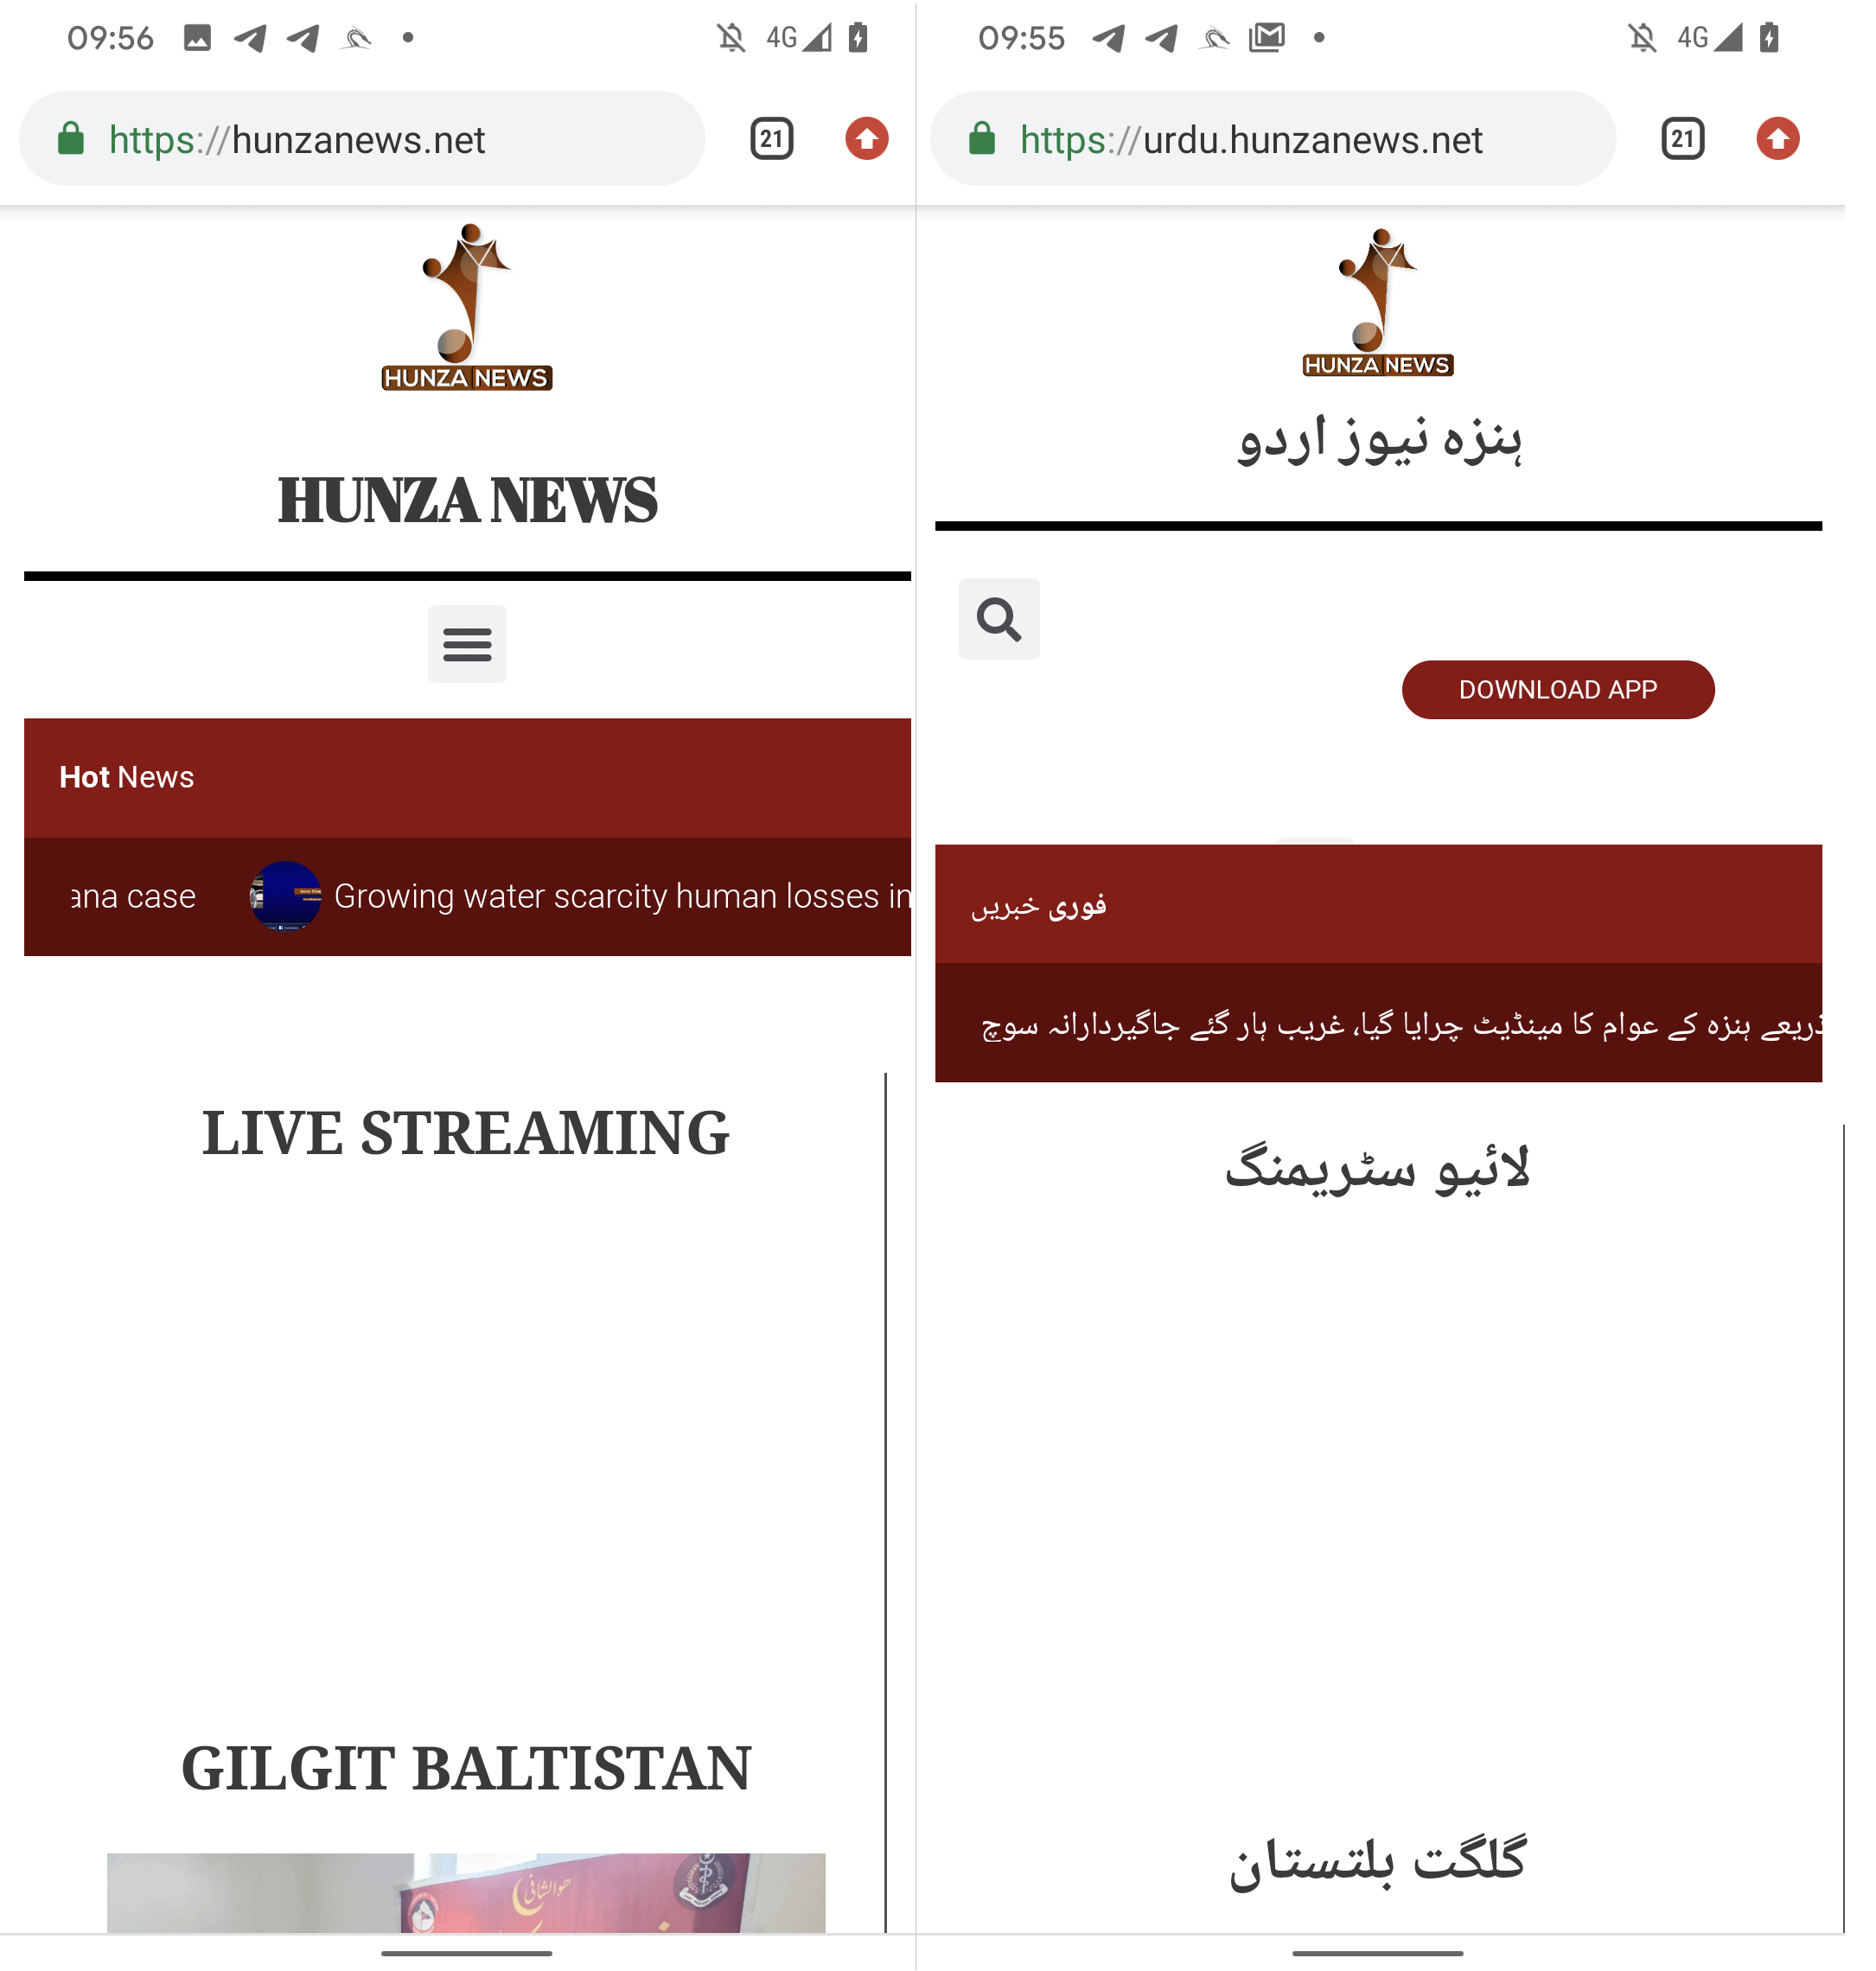 Figur 6 Engelsk (venstre) og urdu (højre) version Hunza News